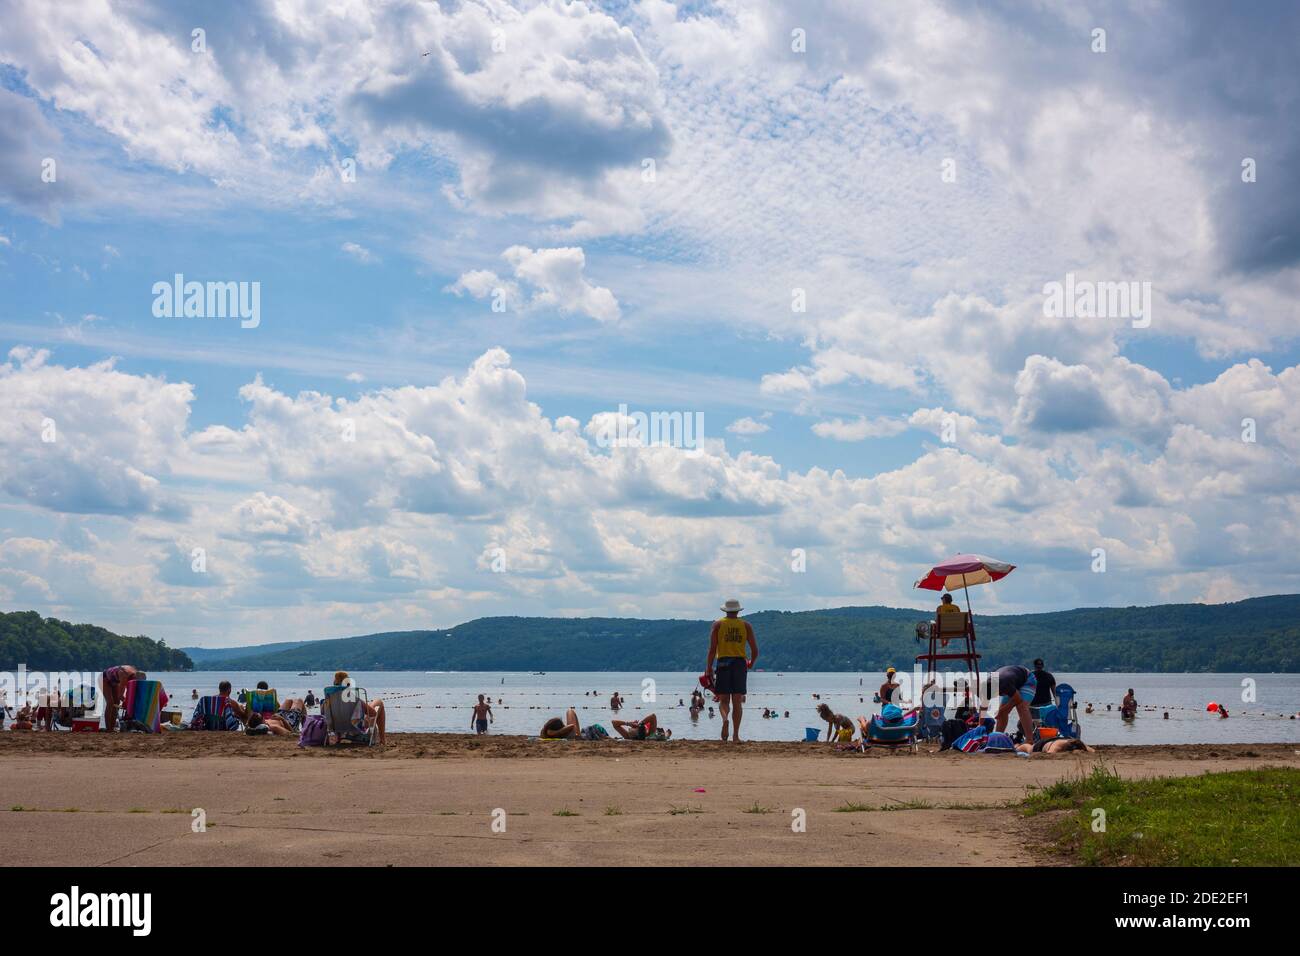 Cooperstown, NY/USA - 15 agosto 2020: Le folle affollano la spiaggia al Glimmerglass state Park, una popolare destinazione estiva, al lago Otsego per fuggire Foto Stock